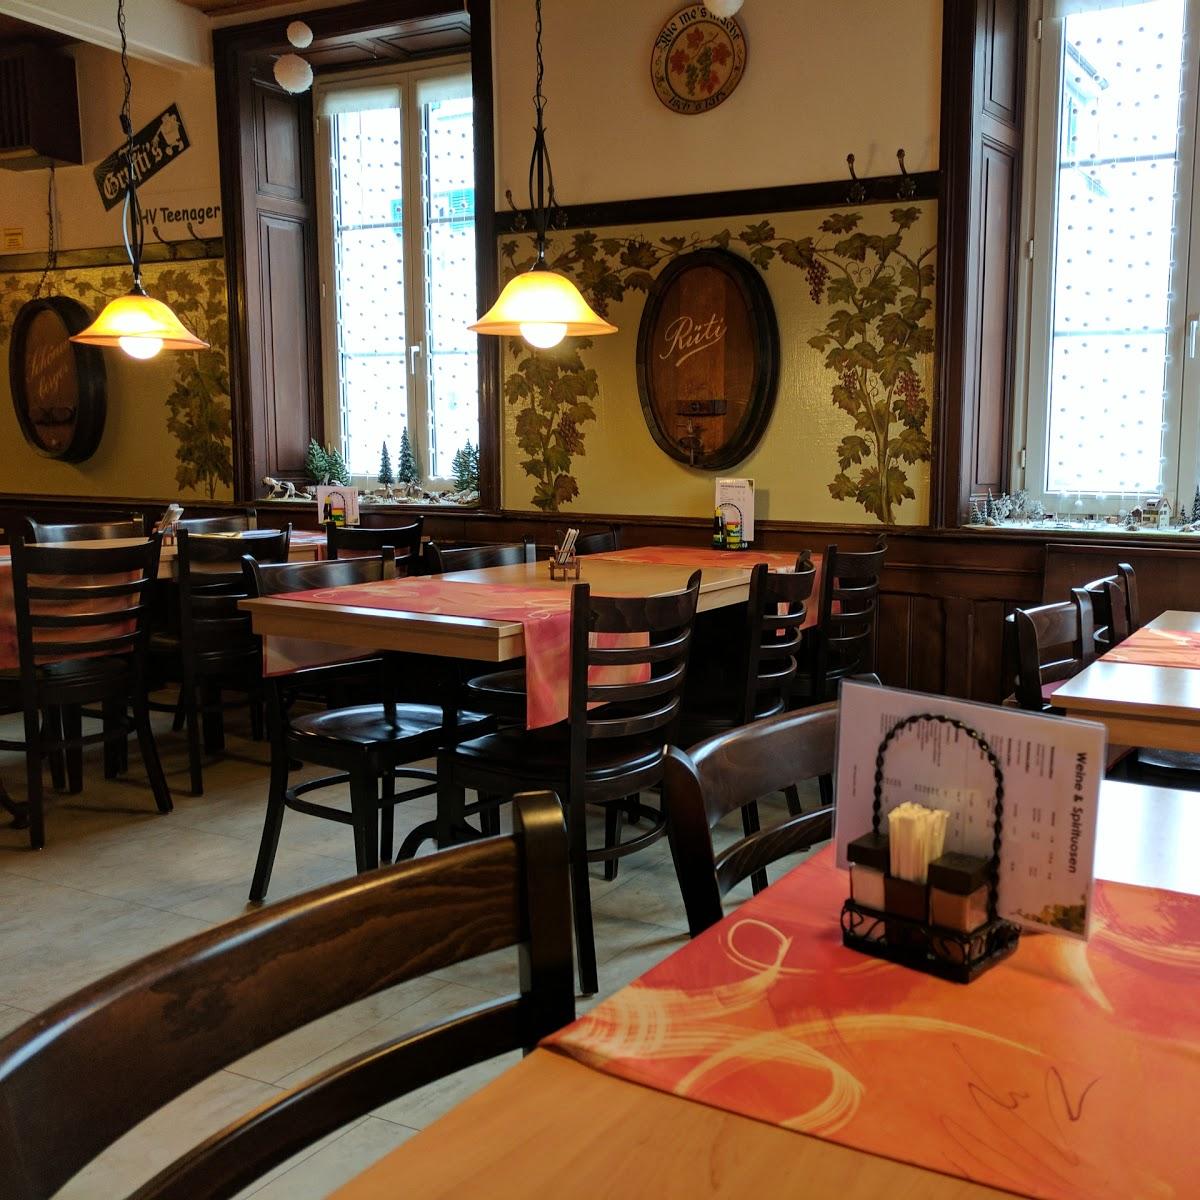 Restaurant "Restaurant zur Traube - Italienische & Spanische Spezialitäten" in Bottmingen